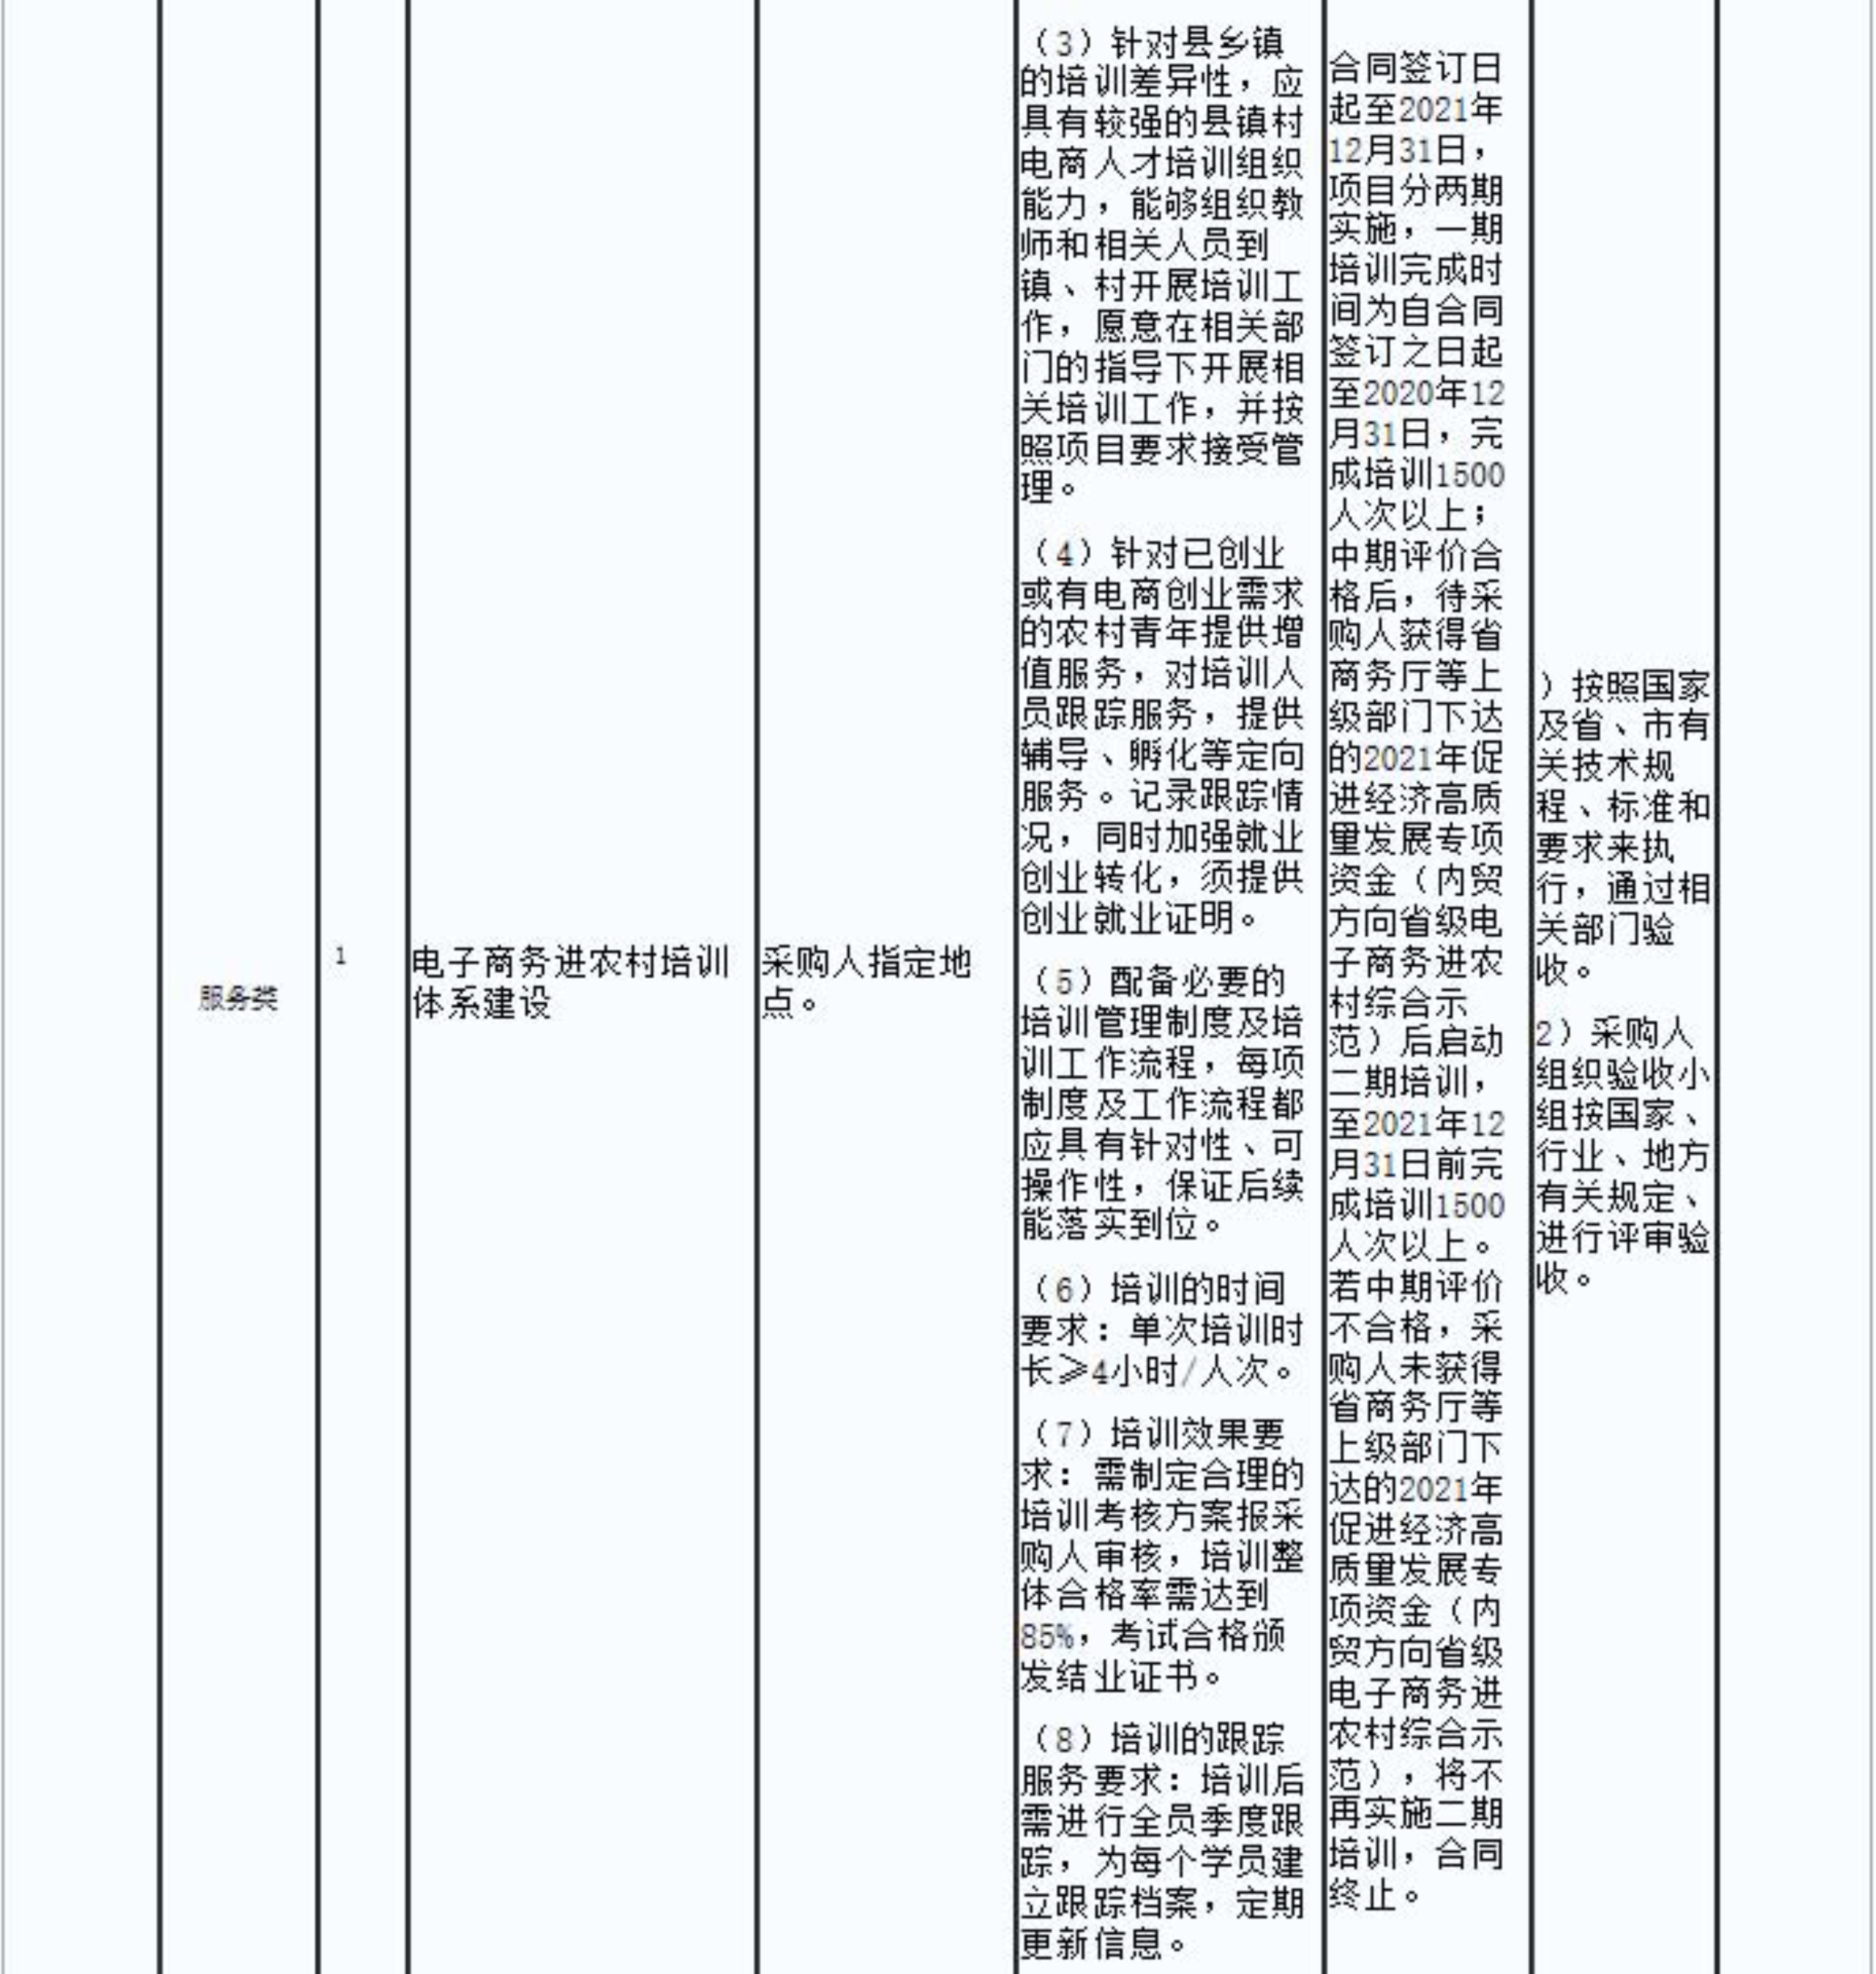 2.连平县电子商务进农村培训体系建设项目的成交结果公告_2.jpg